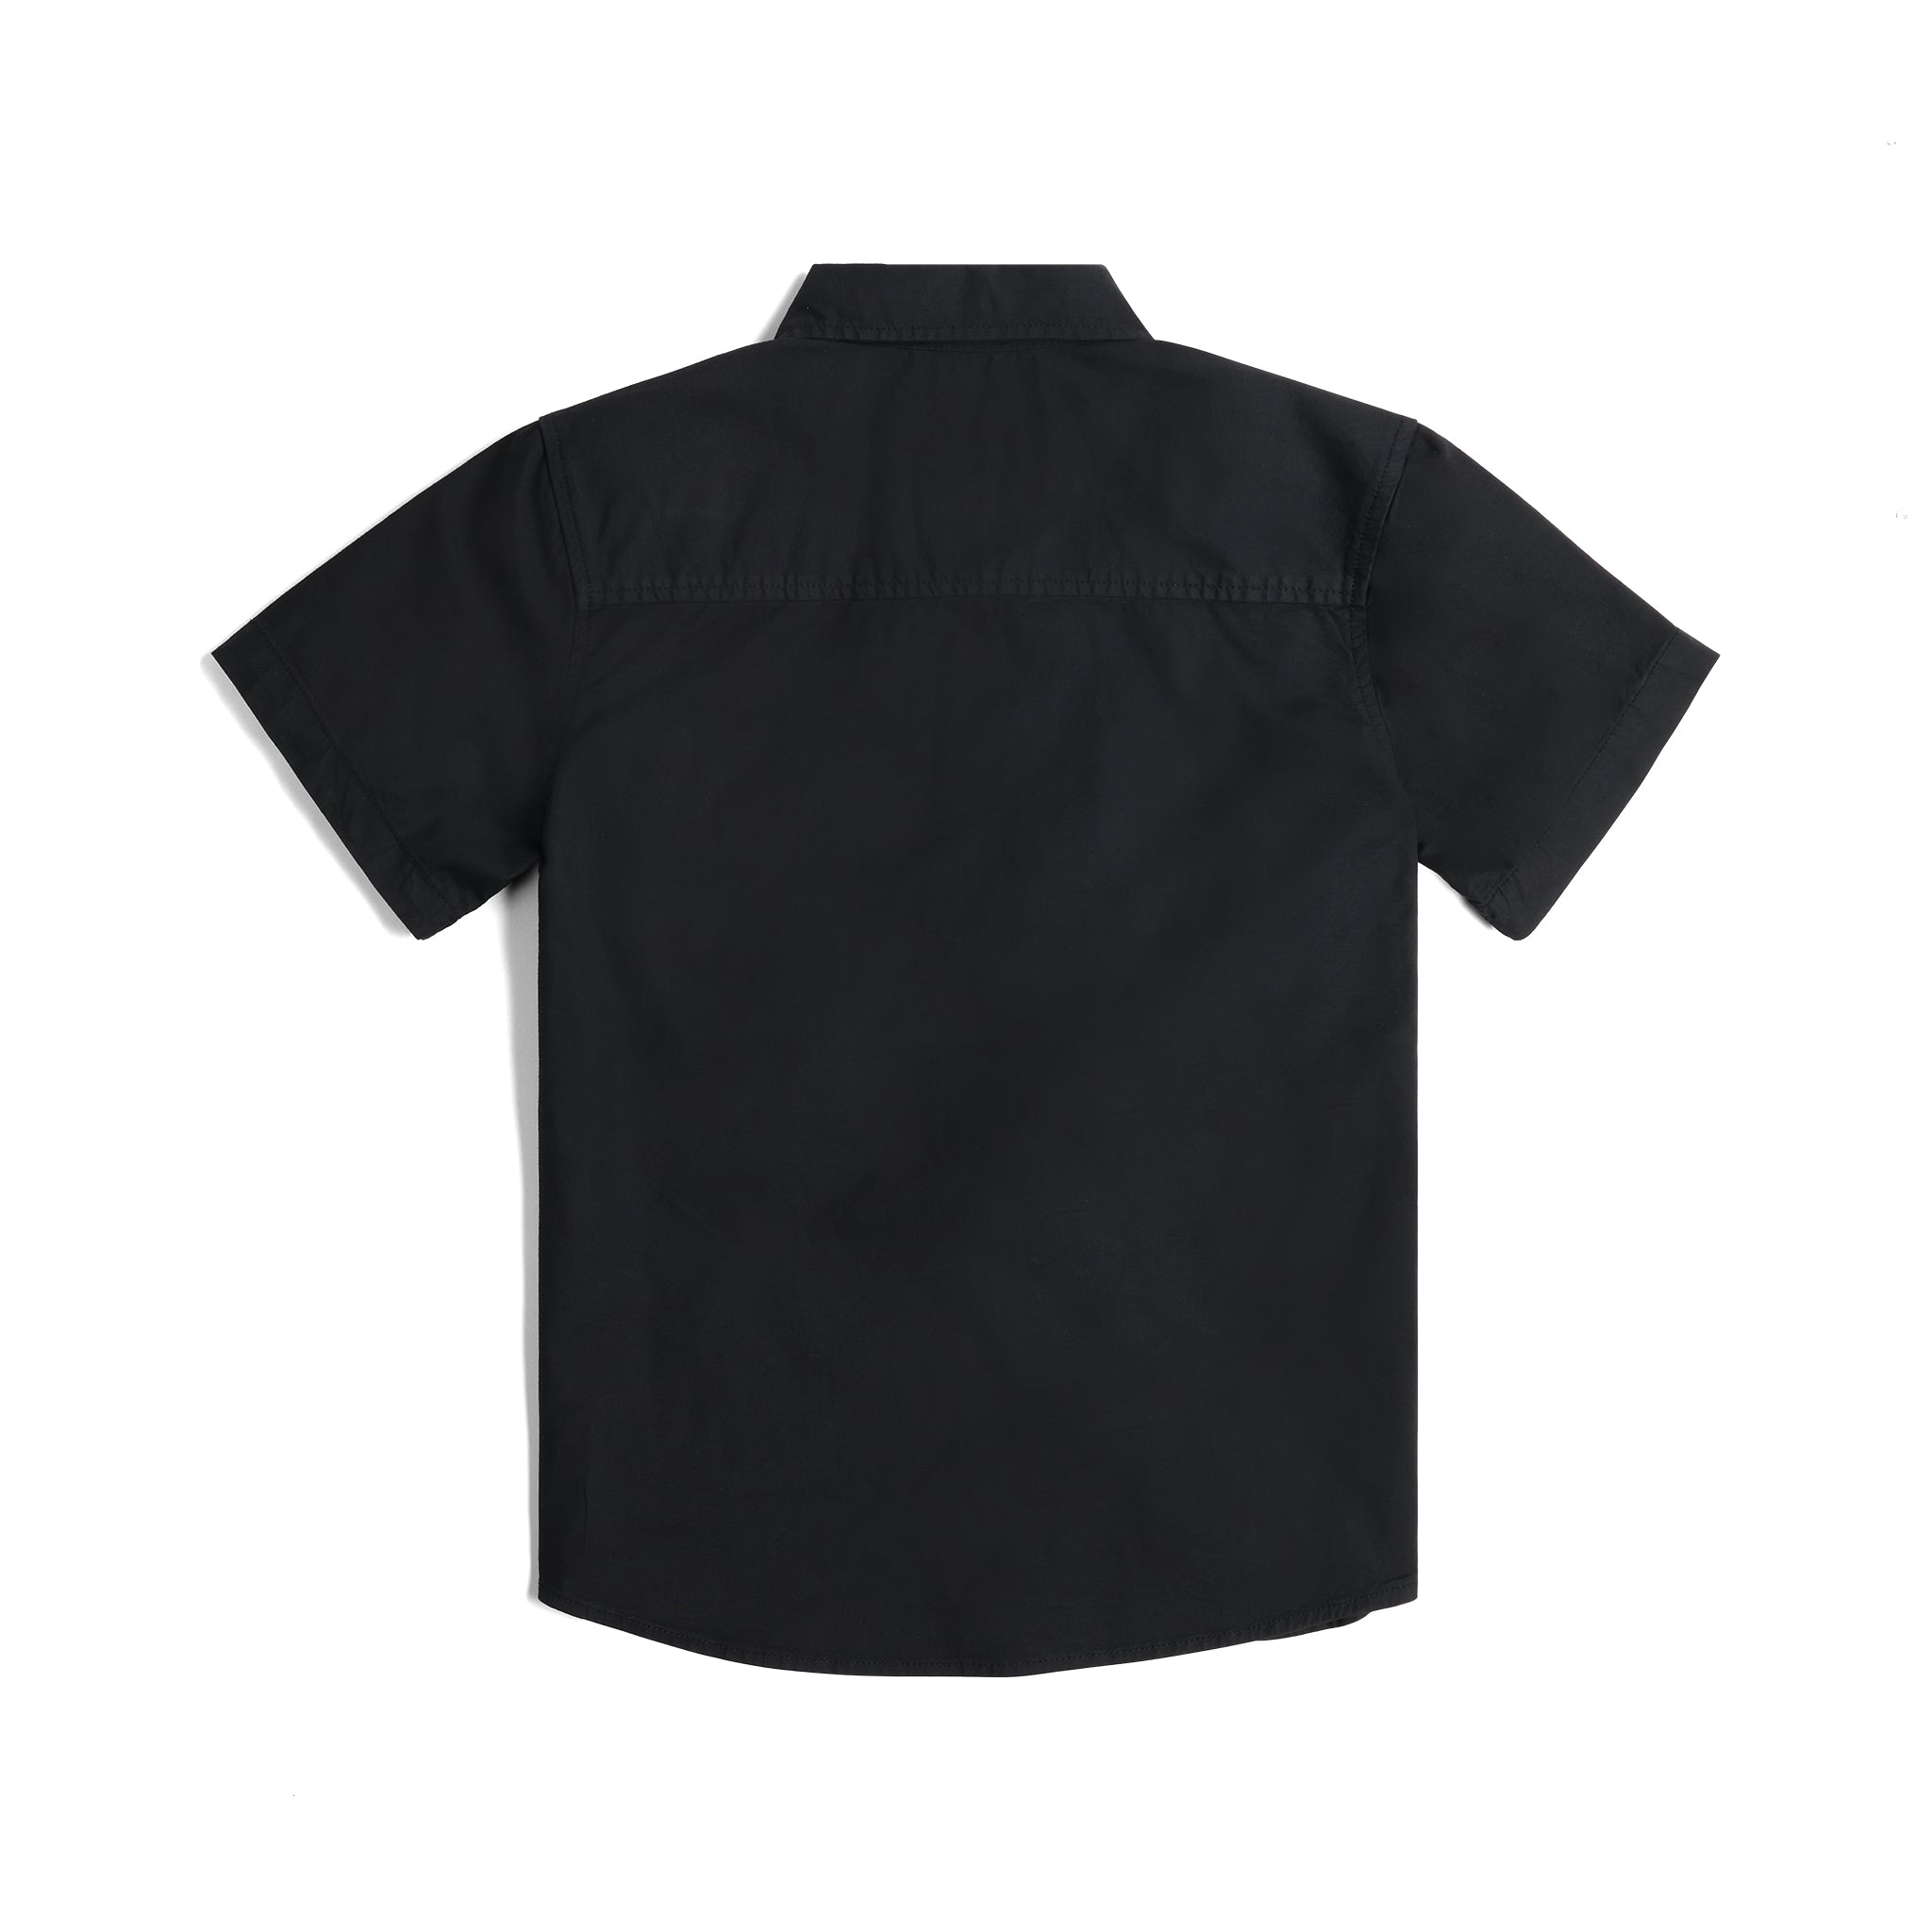 Back View of Topo Designs Dirt Desert Shirt Ss - Women's in "Black"